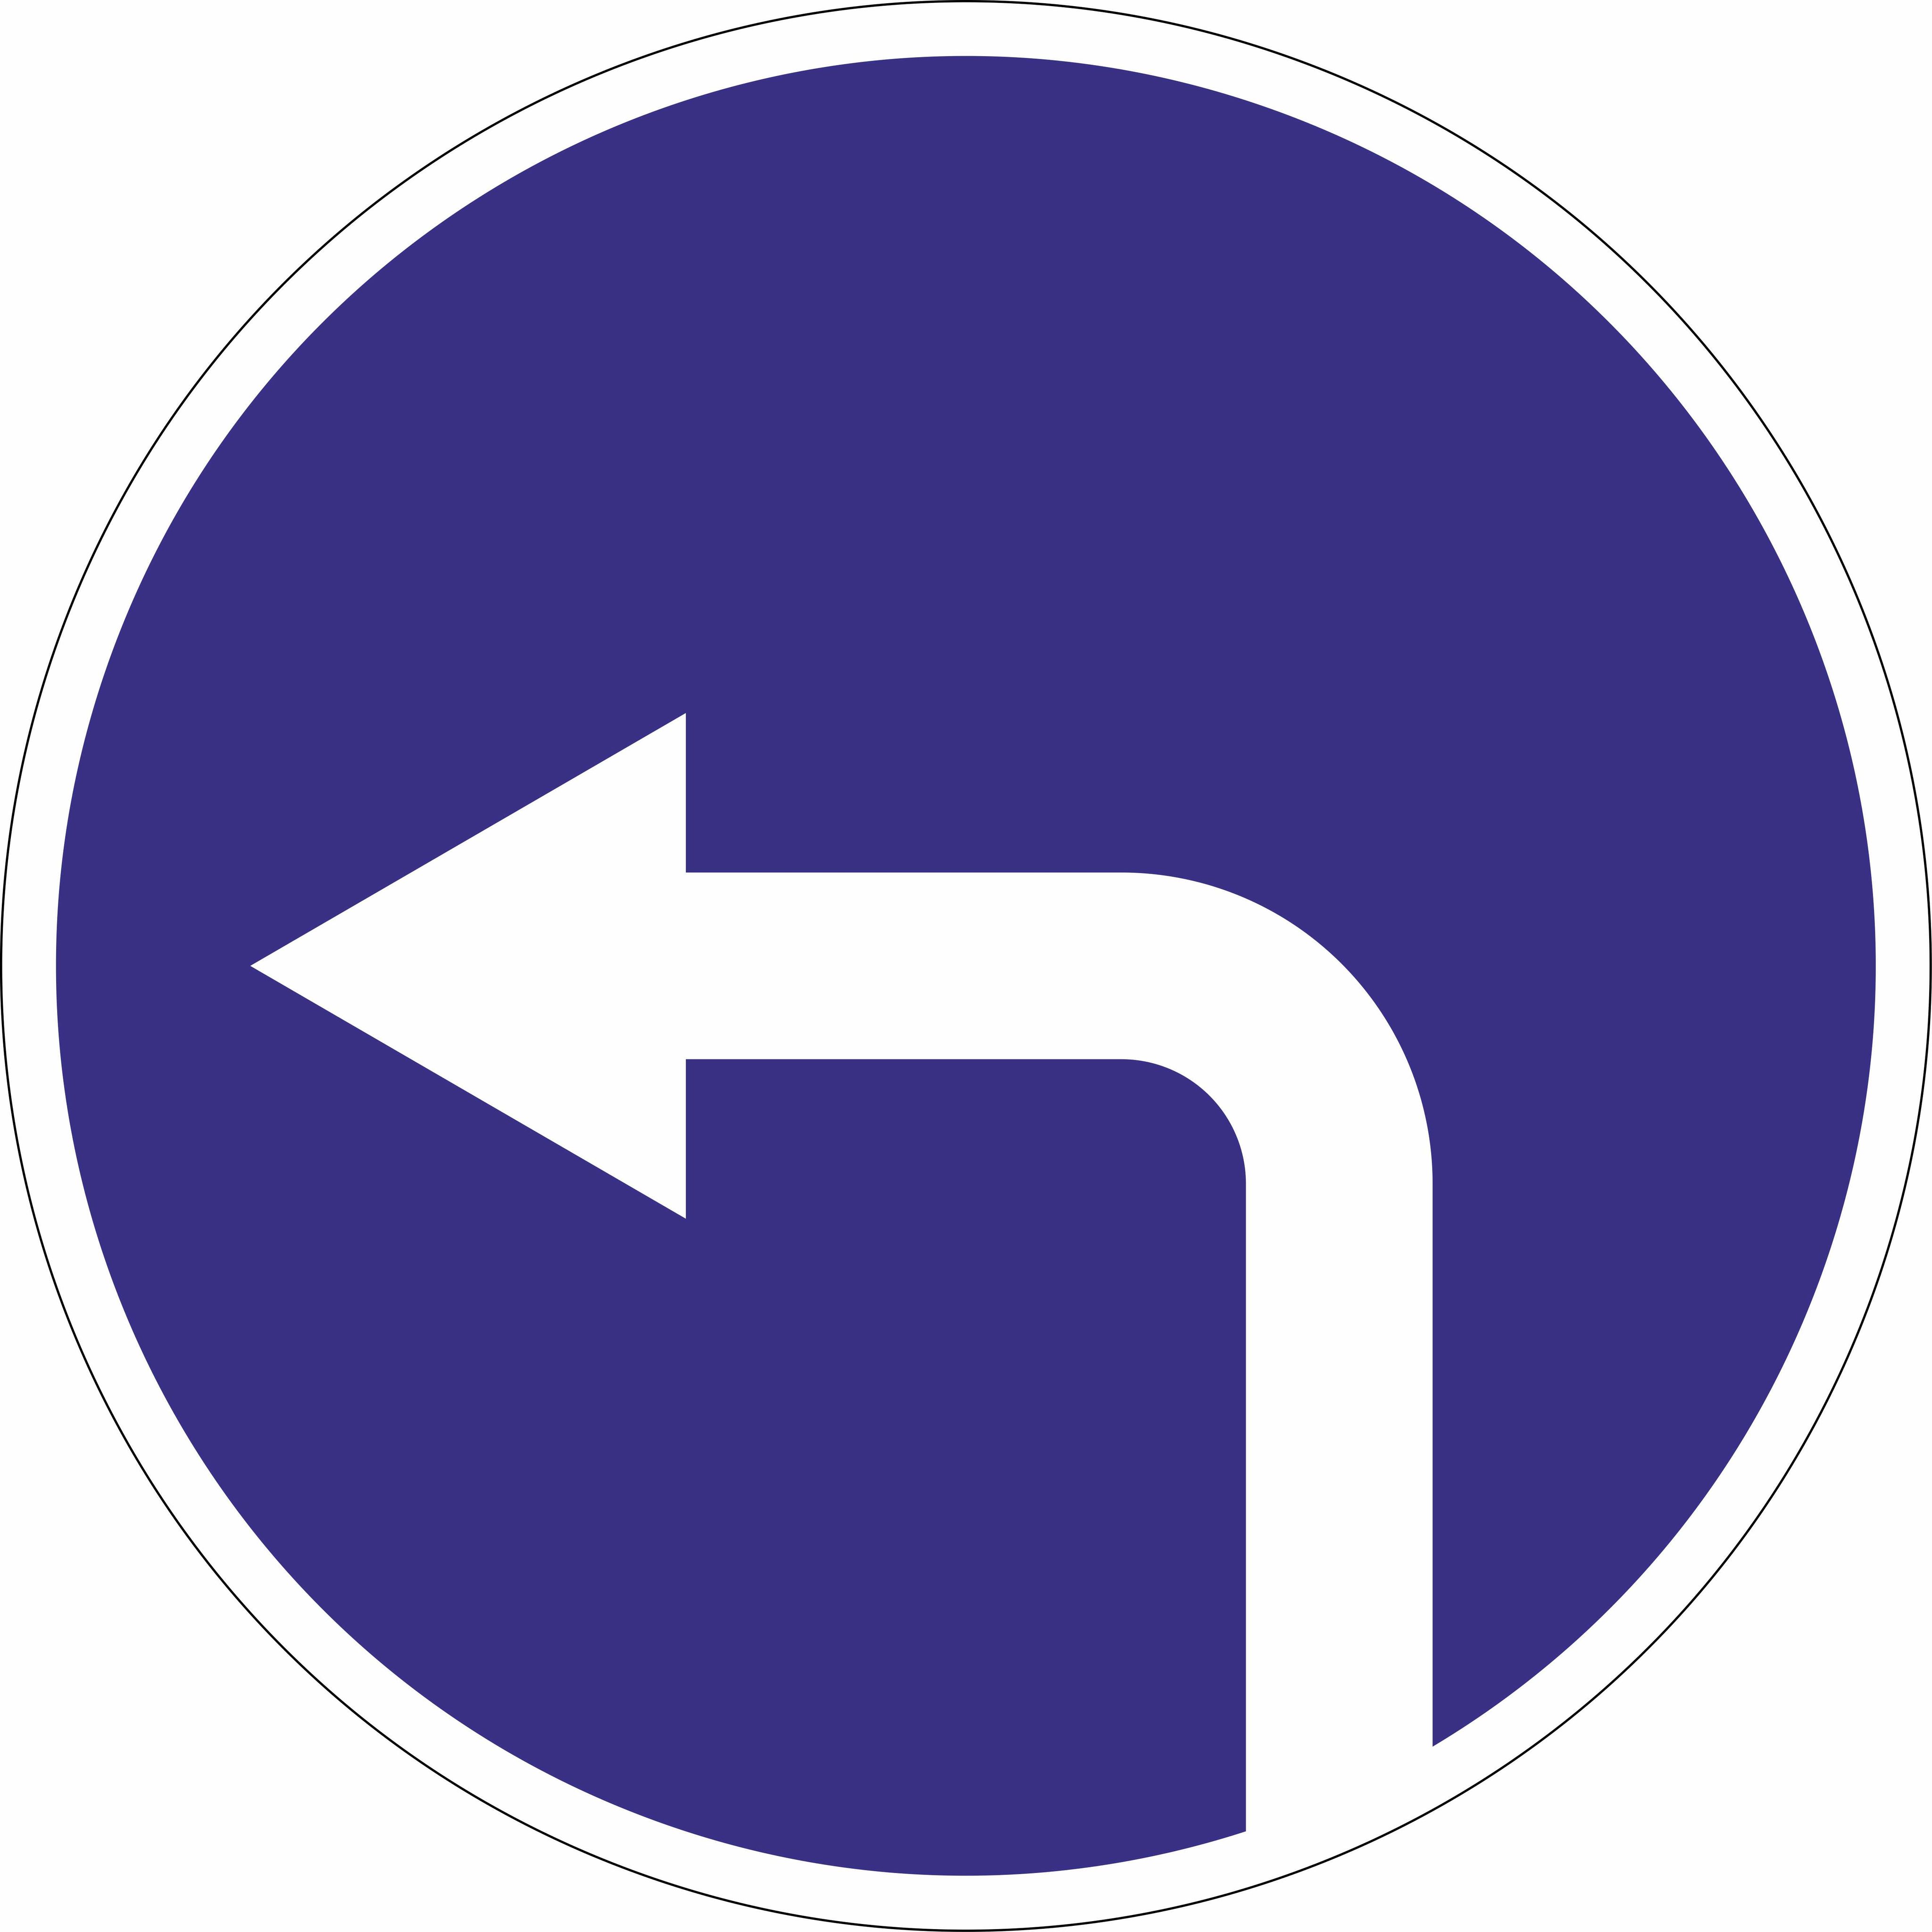 1.3 4.1. Дорожный знак 4.1.3 движение налево. Дорожный знак 4.1.2 движение направо. Знак поворот только направо. Поворот только направо знак 4/1/2.